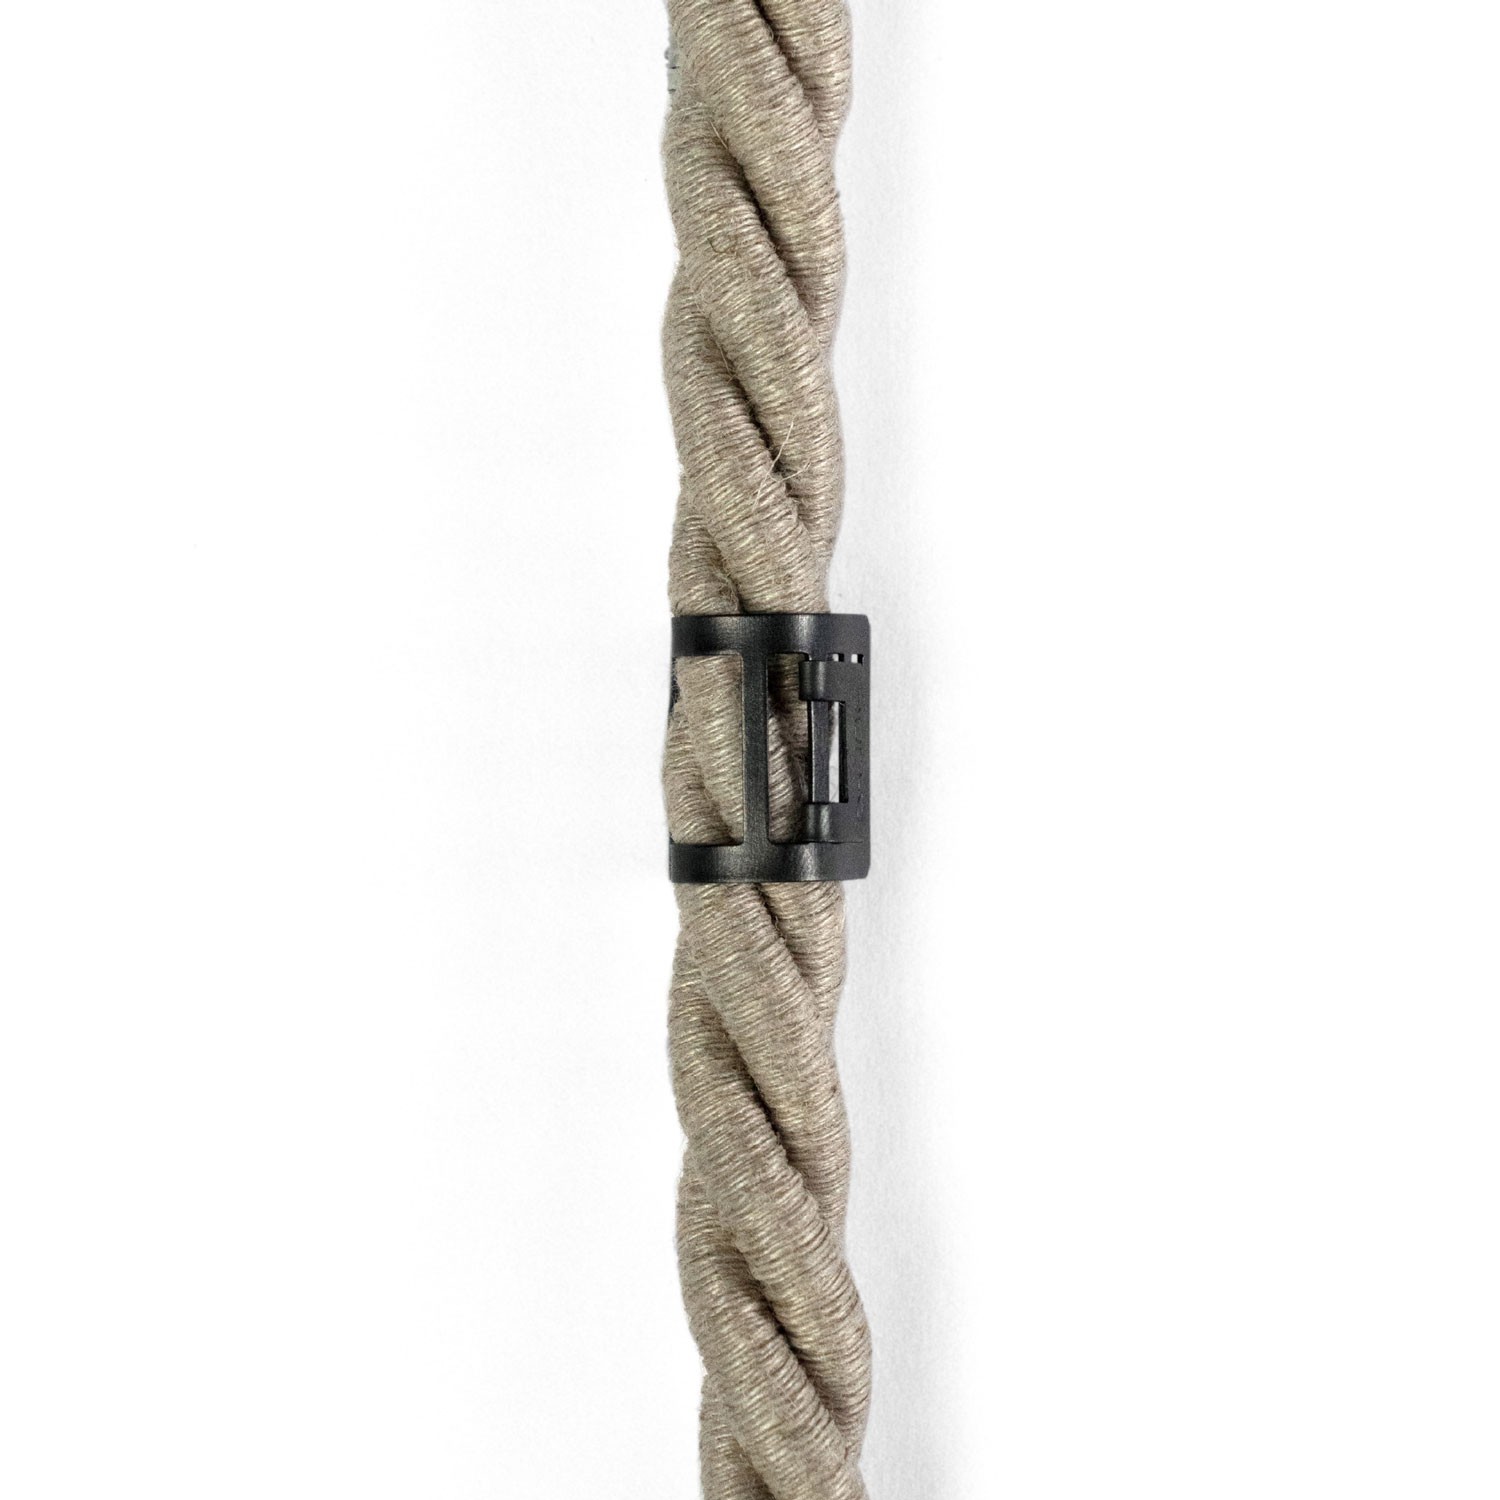 Kabelklämma i metall för repkablar med en diameter på 16 mm